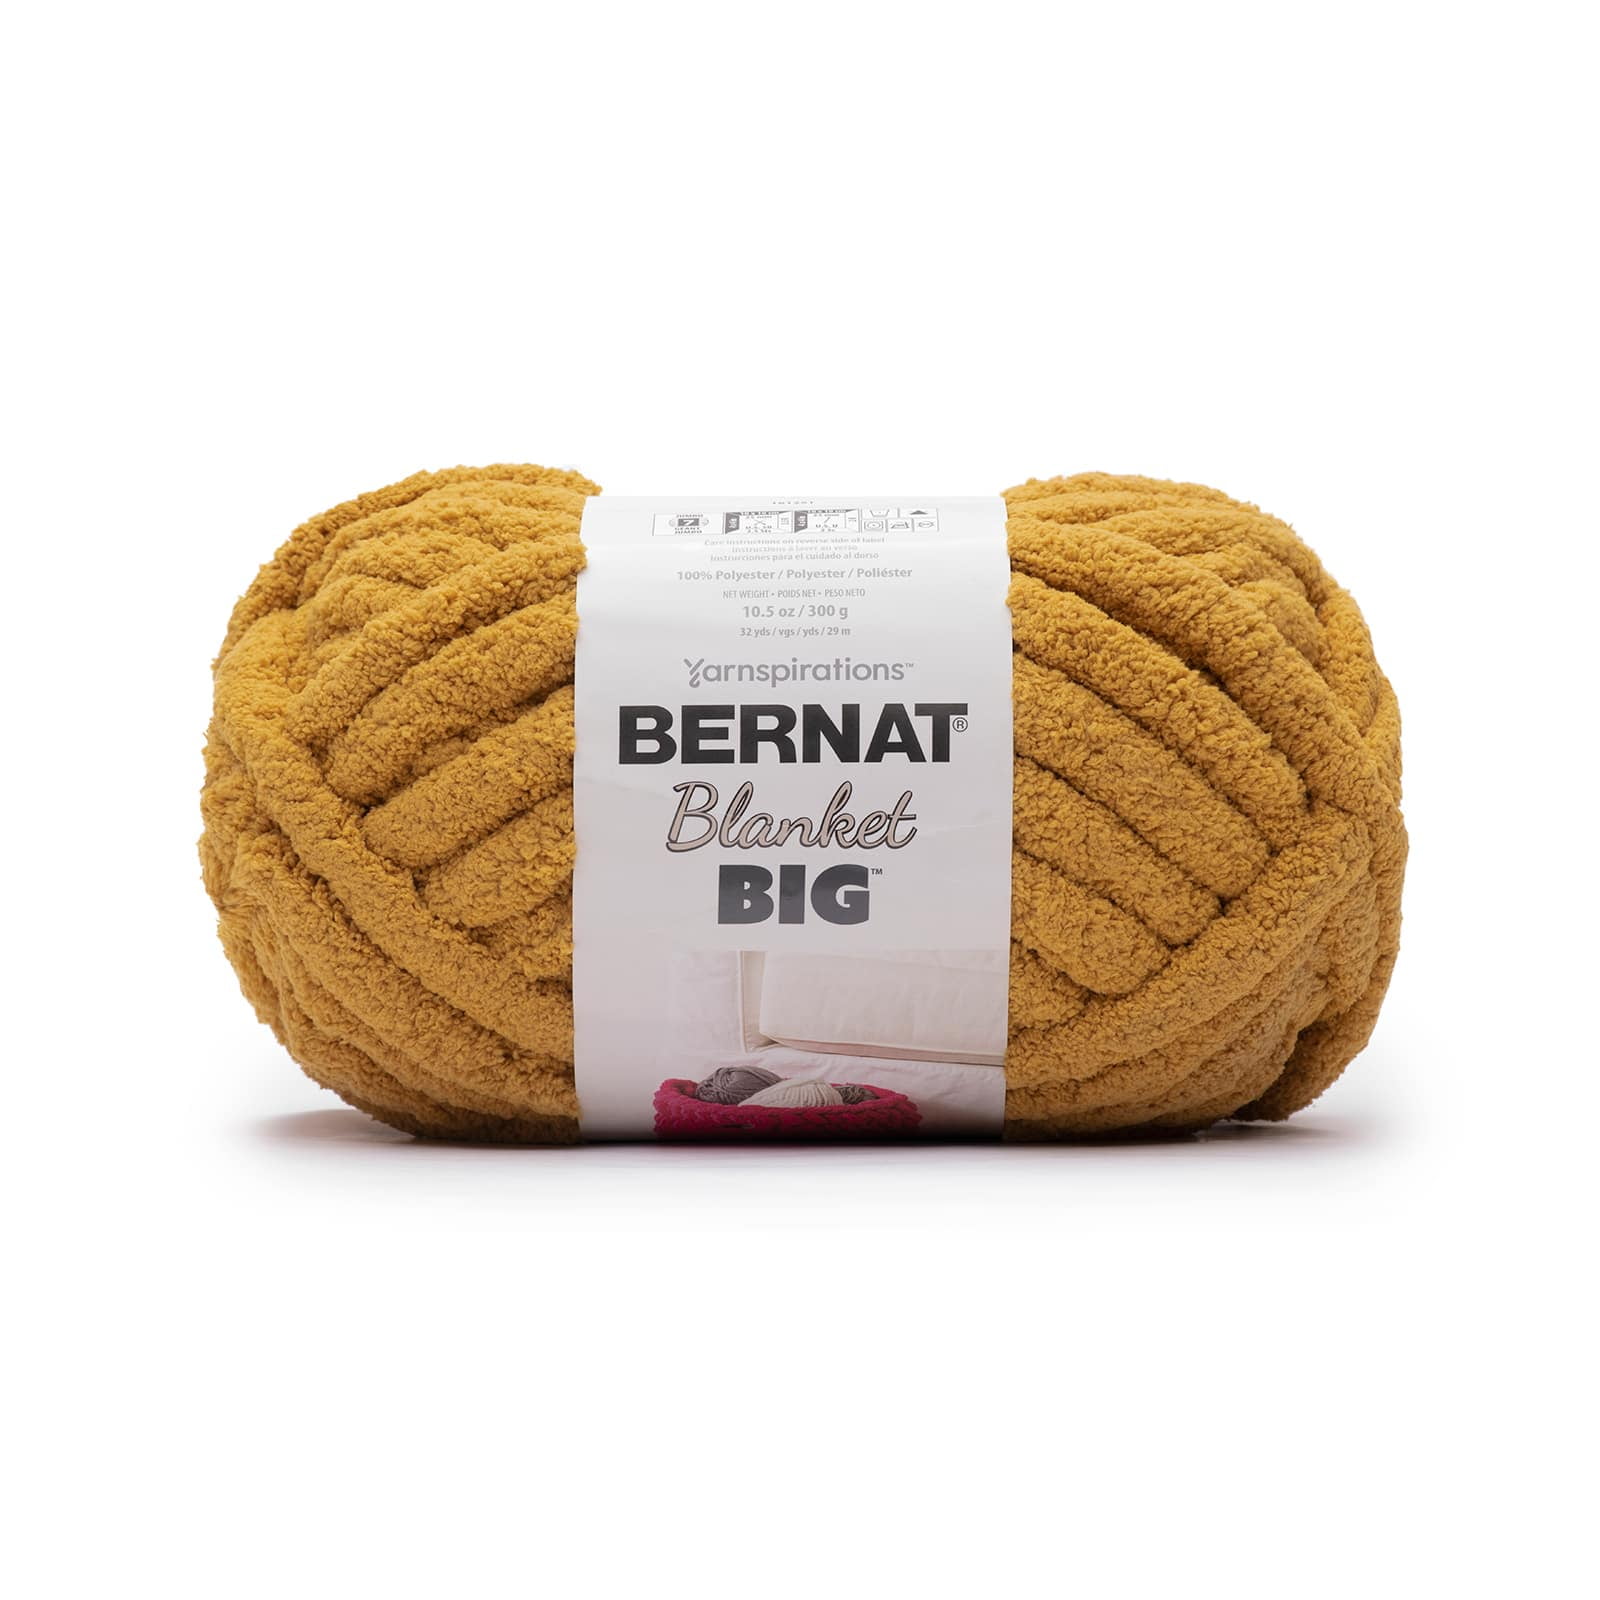 CINNAMON Bernat Blanket BIG Yarn, 10.5 Oz /300 G, 32 Yards/29m, Jumbo Size  7 bulk Rate Shipping 